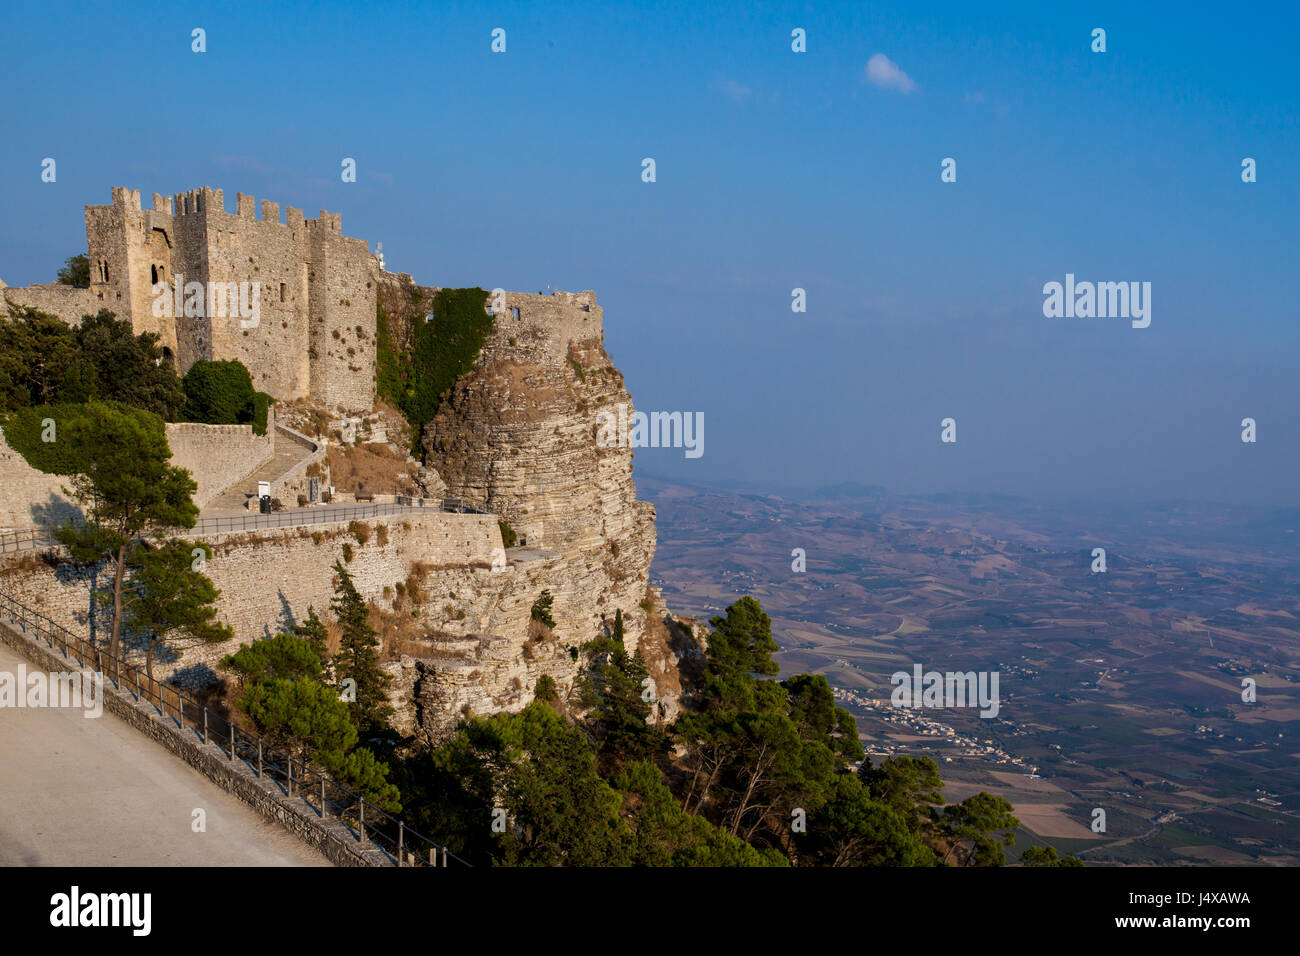 Castello storico di Venezia in Erice, in Sicilia si siede in alto sopra la città di seguito Foto Stock